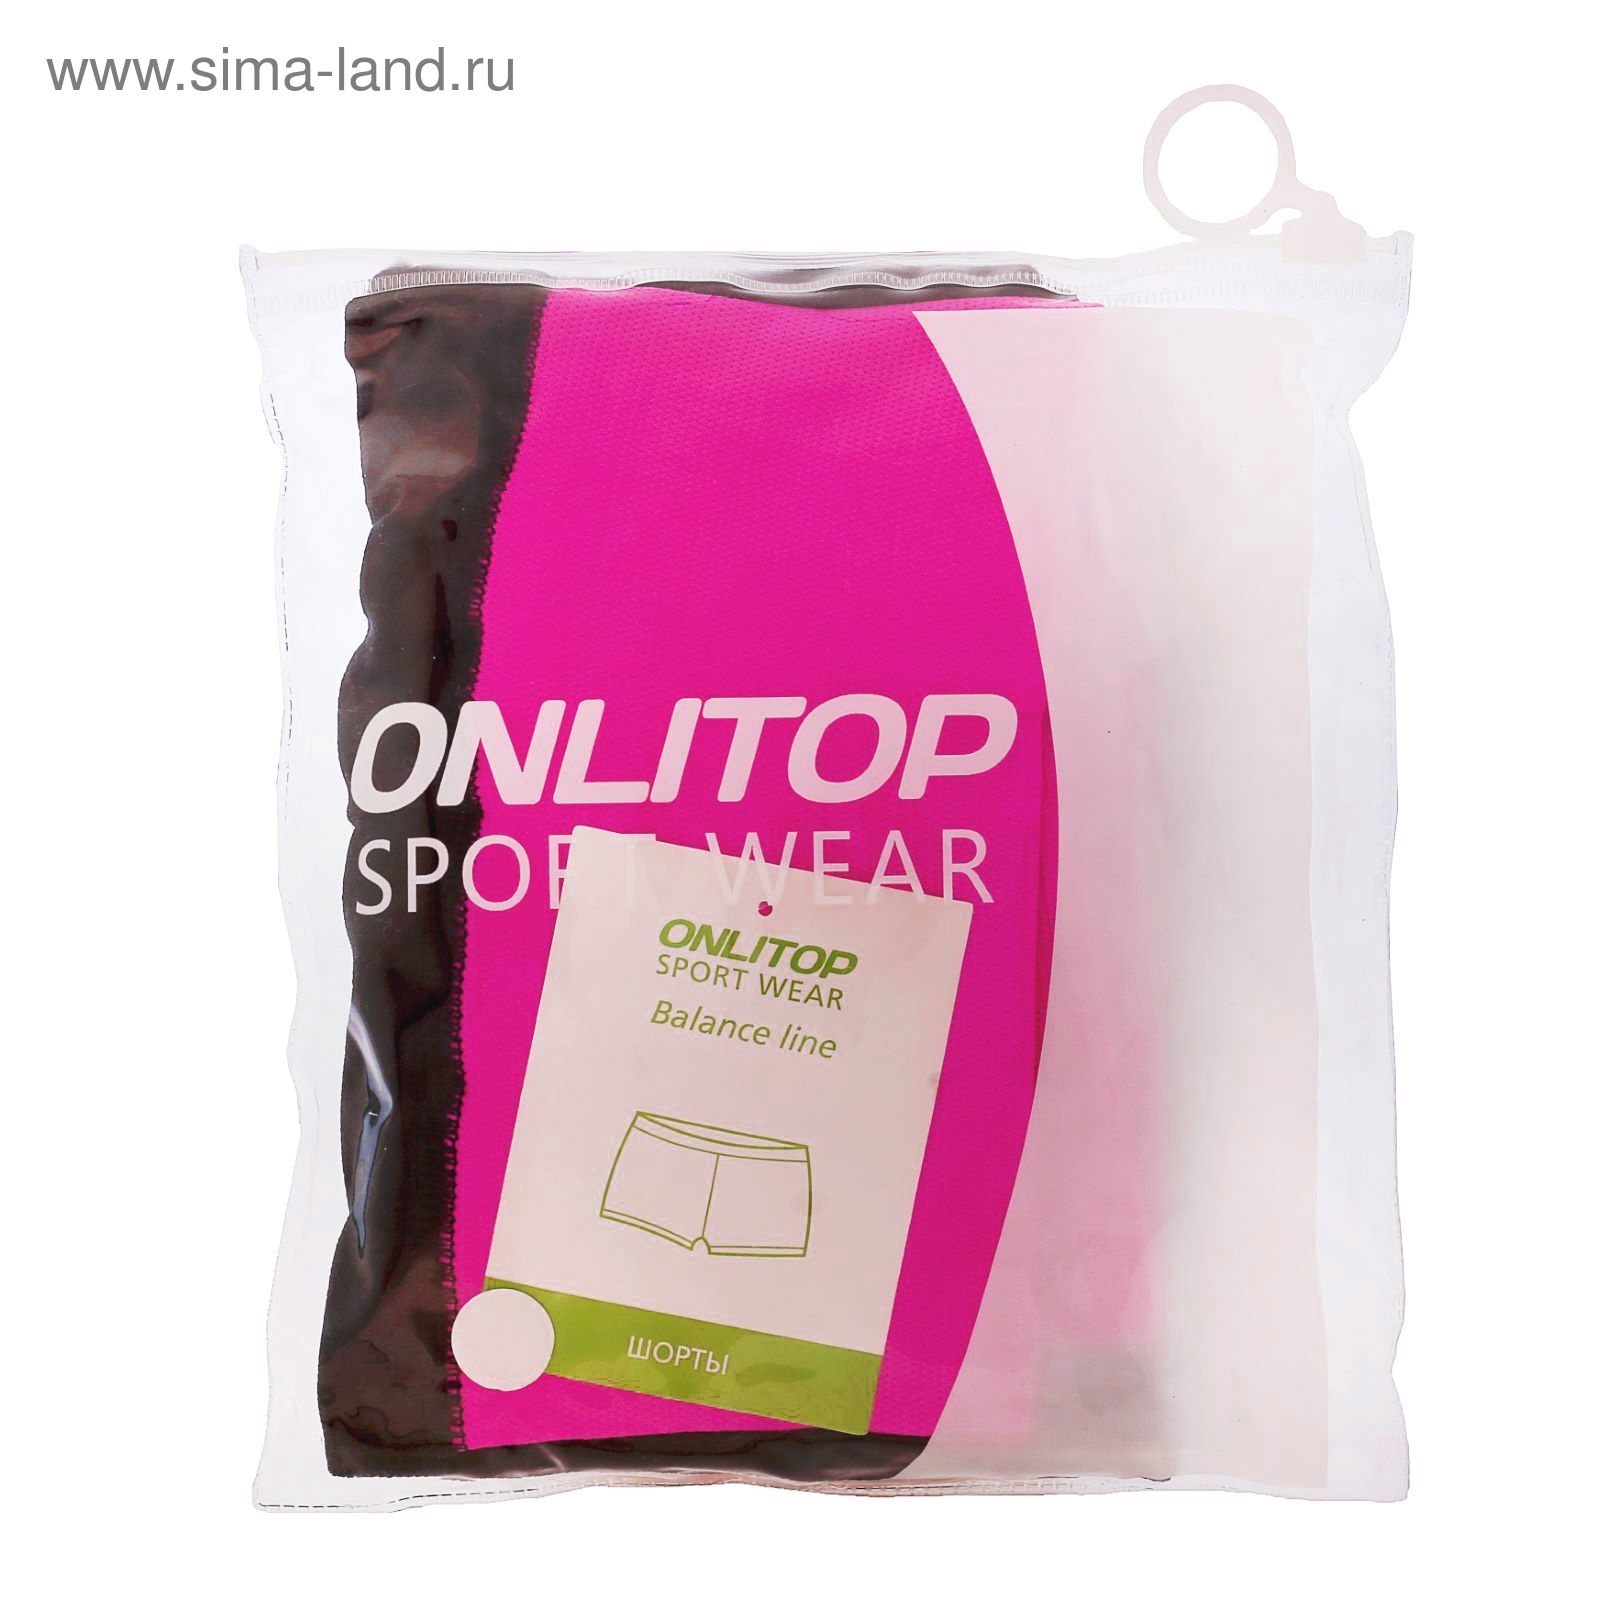 Спортивные шорты ONLITOP Balance rose, размер S-M (42-44)